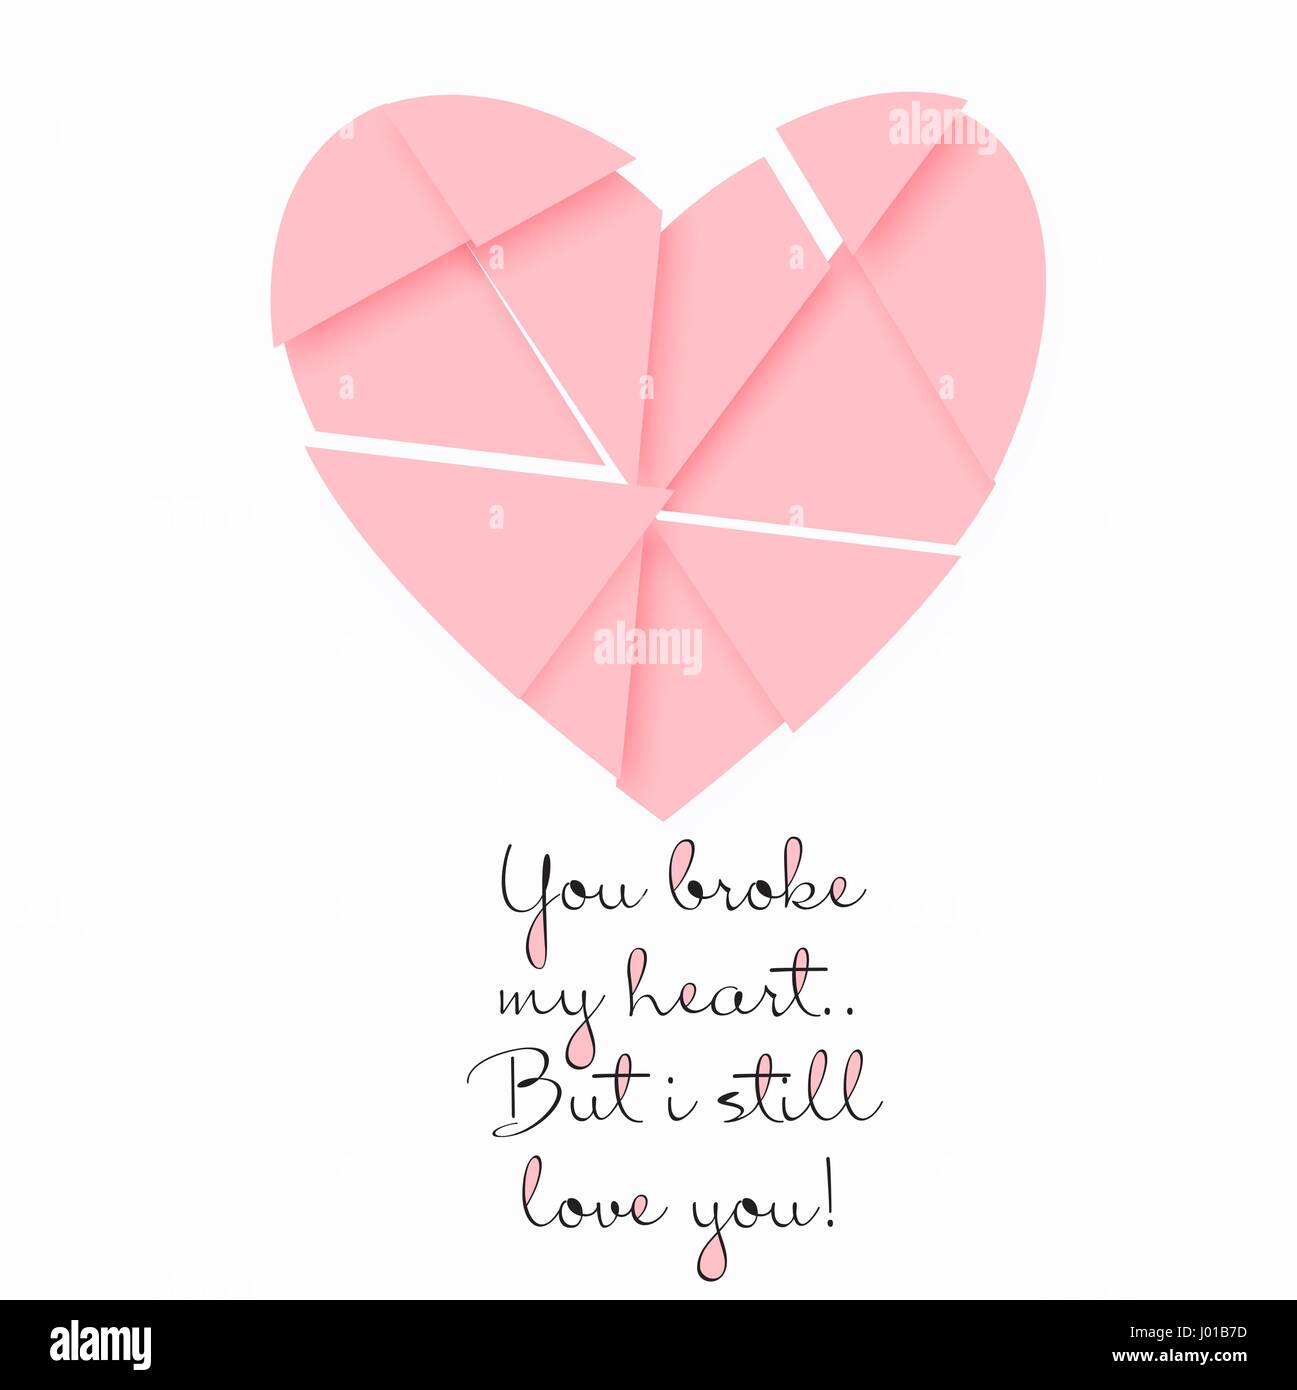 Carte postale de vecteur pour Valentine s day avec un cœur brisé et un devis. Modèle pour poster ou carte dans des tons roses. Illustration de Vecteur